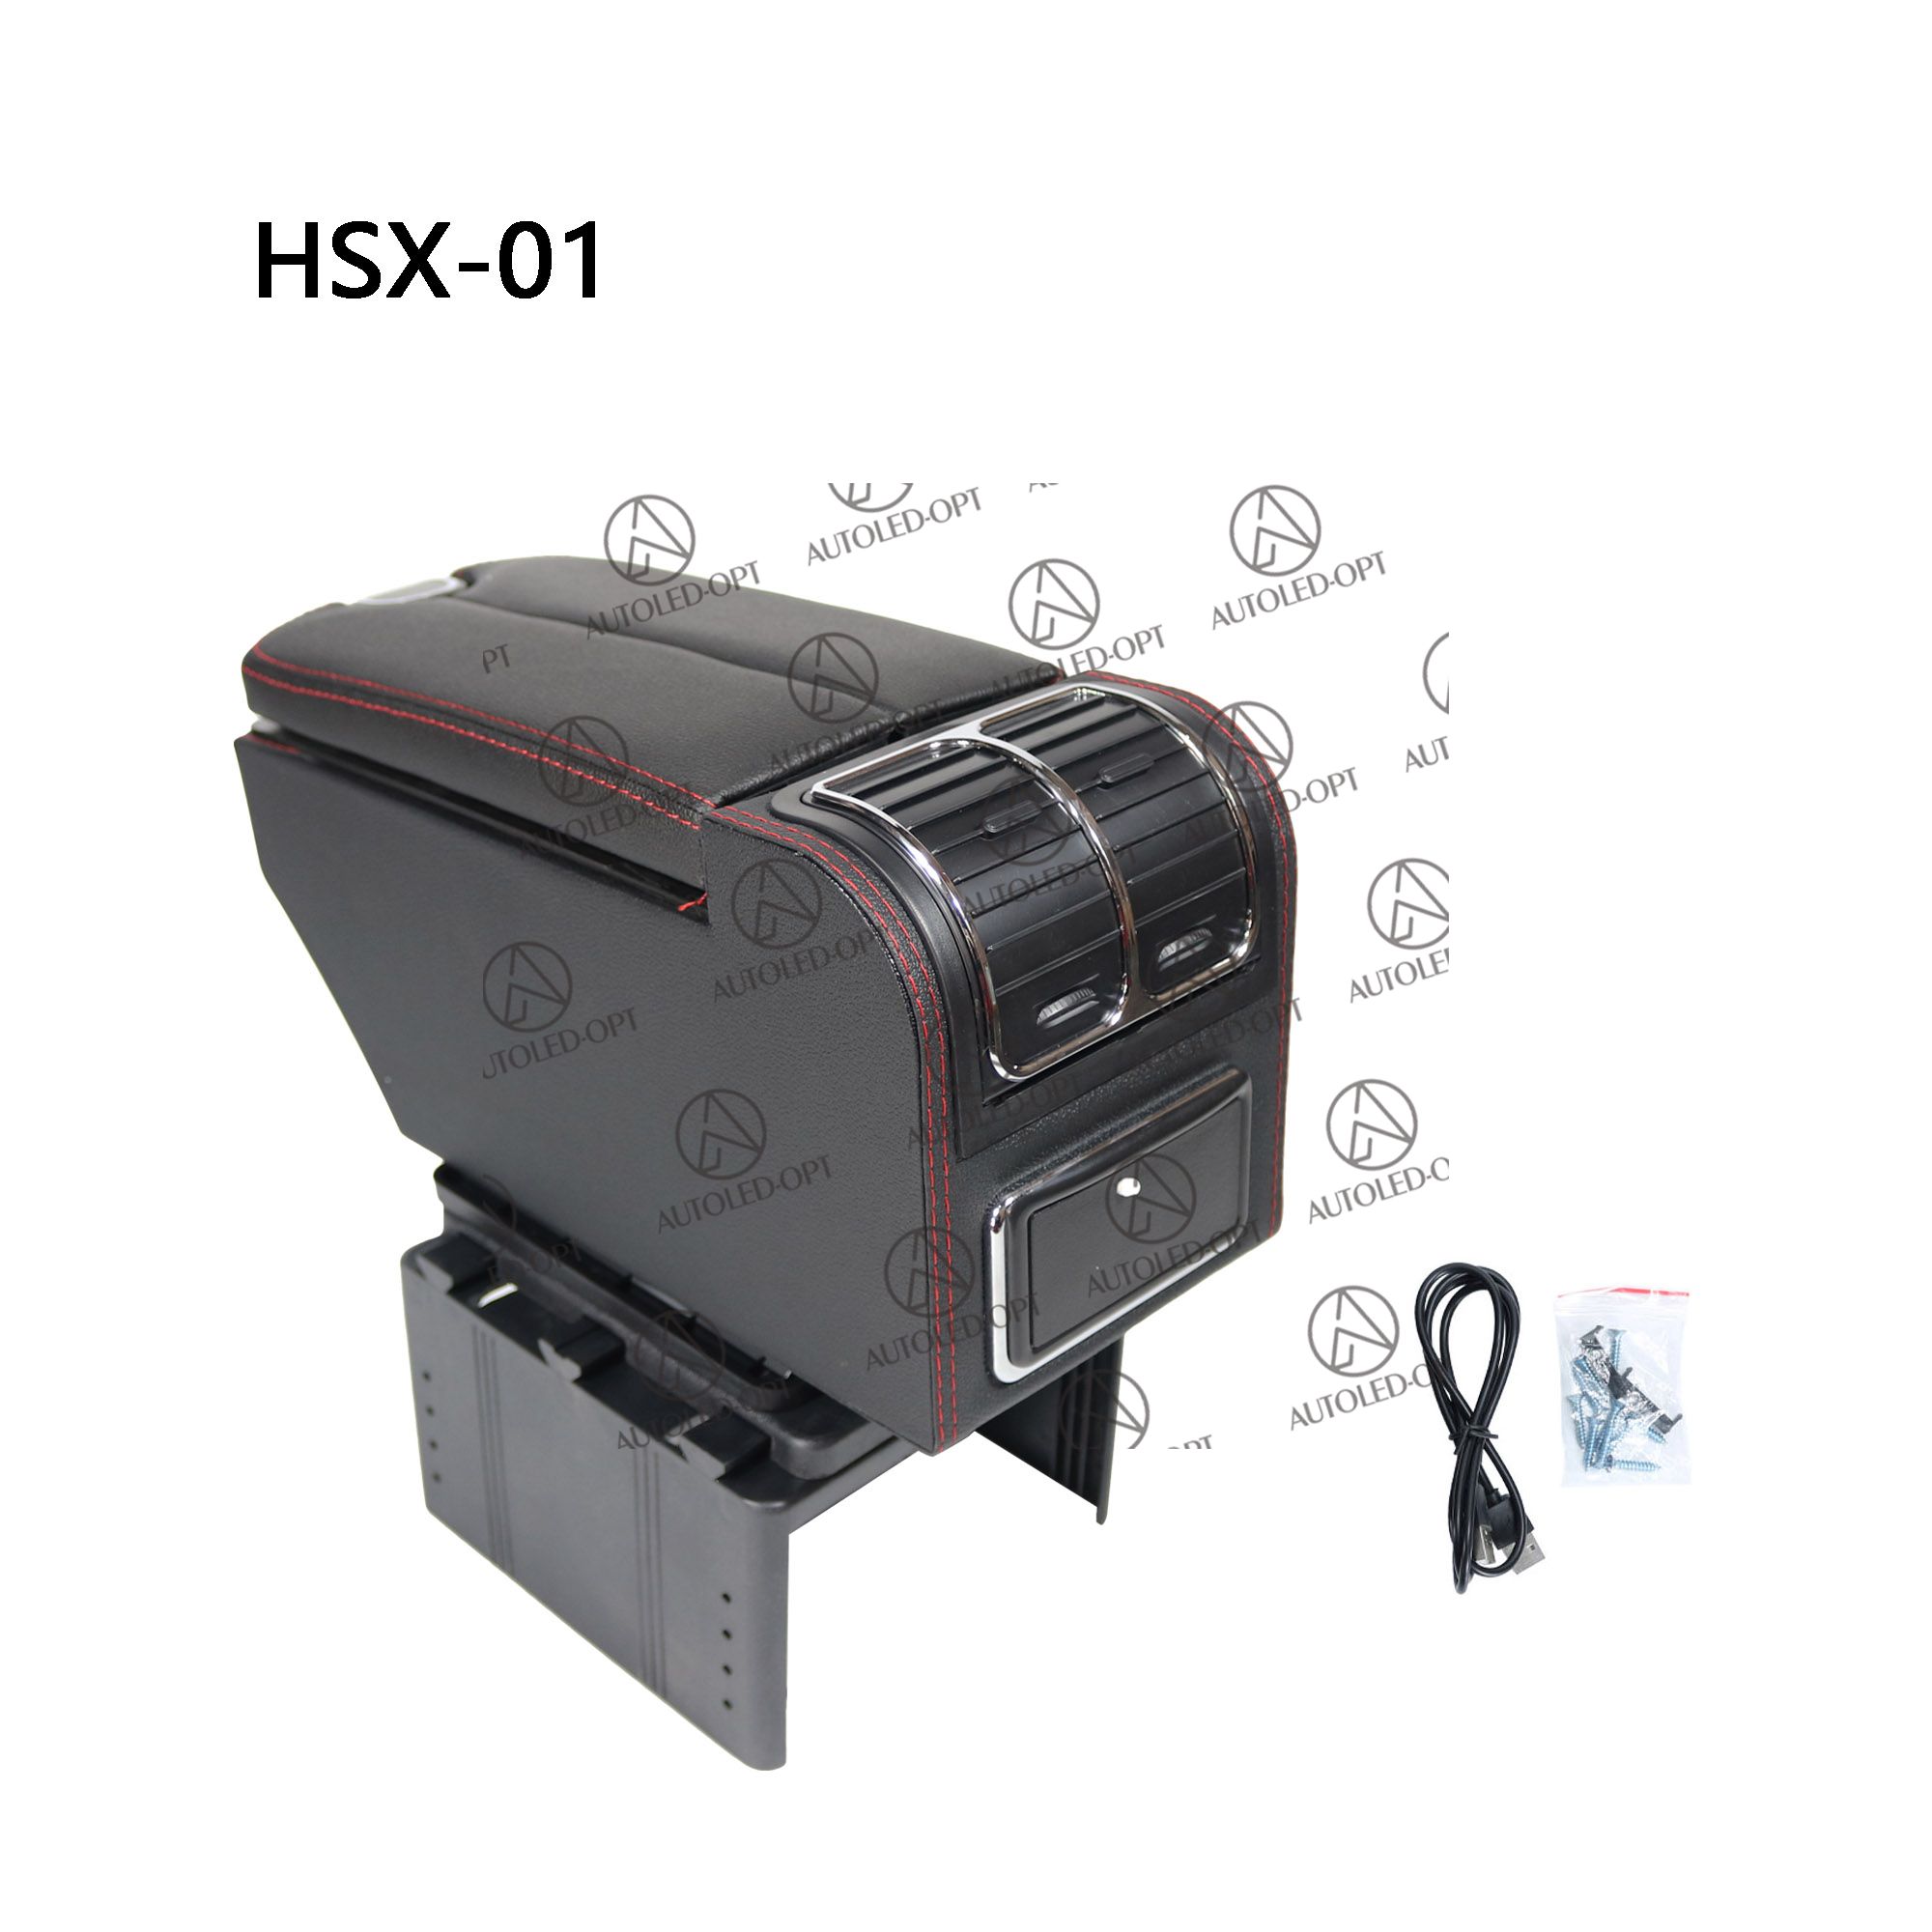 HSX-01